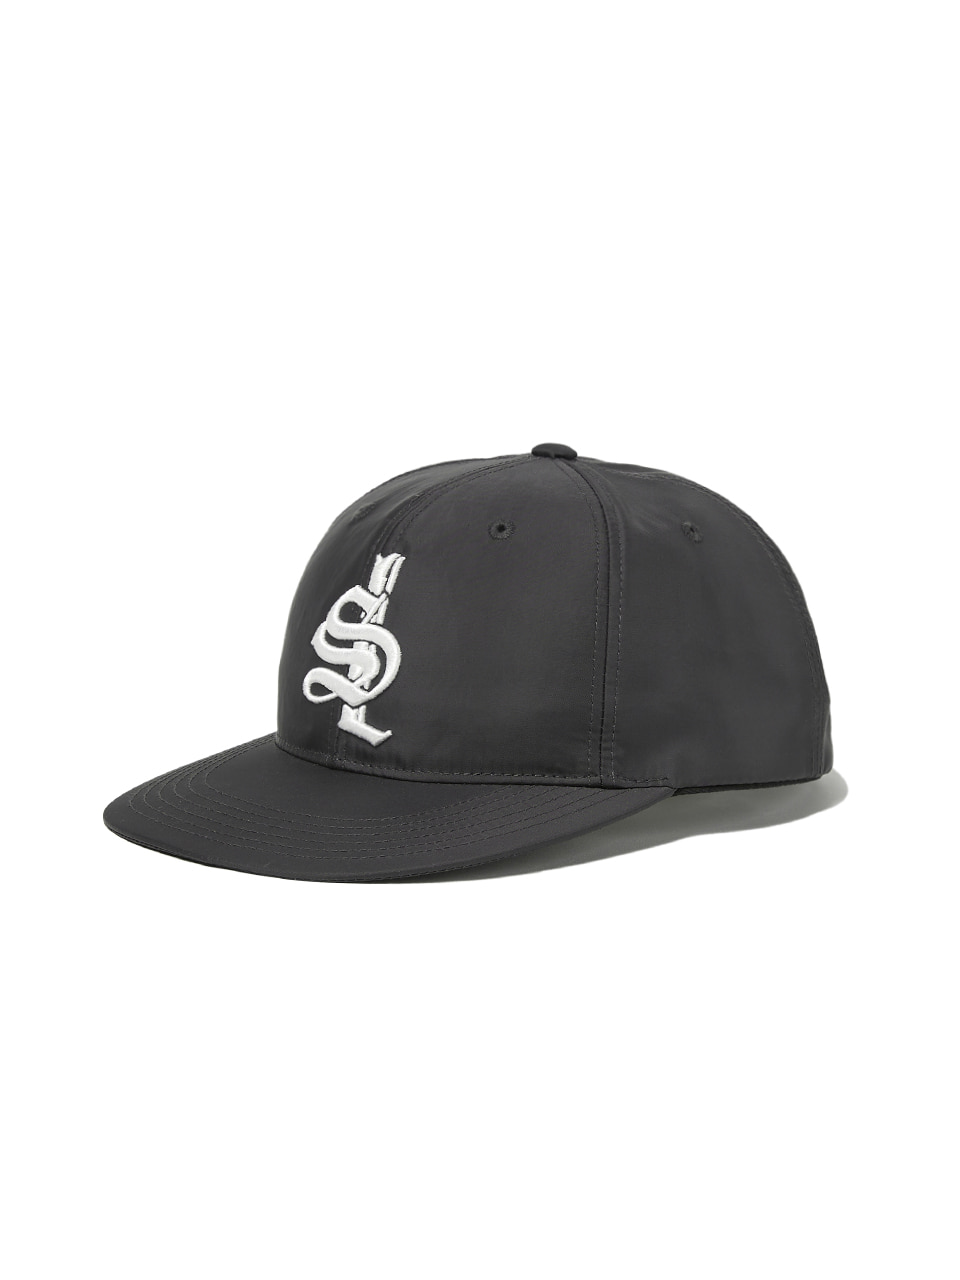 SOUNDSLIFE - SL Logo Baseball Cap Charcoal